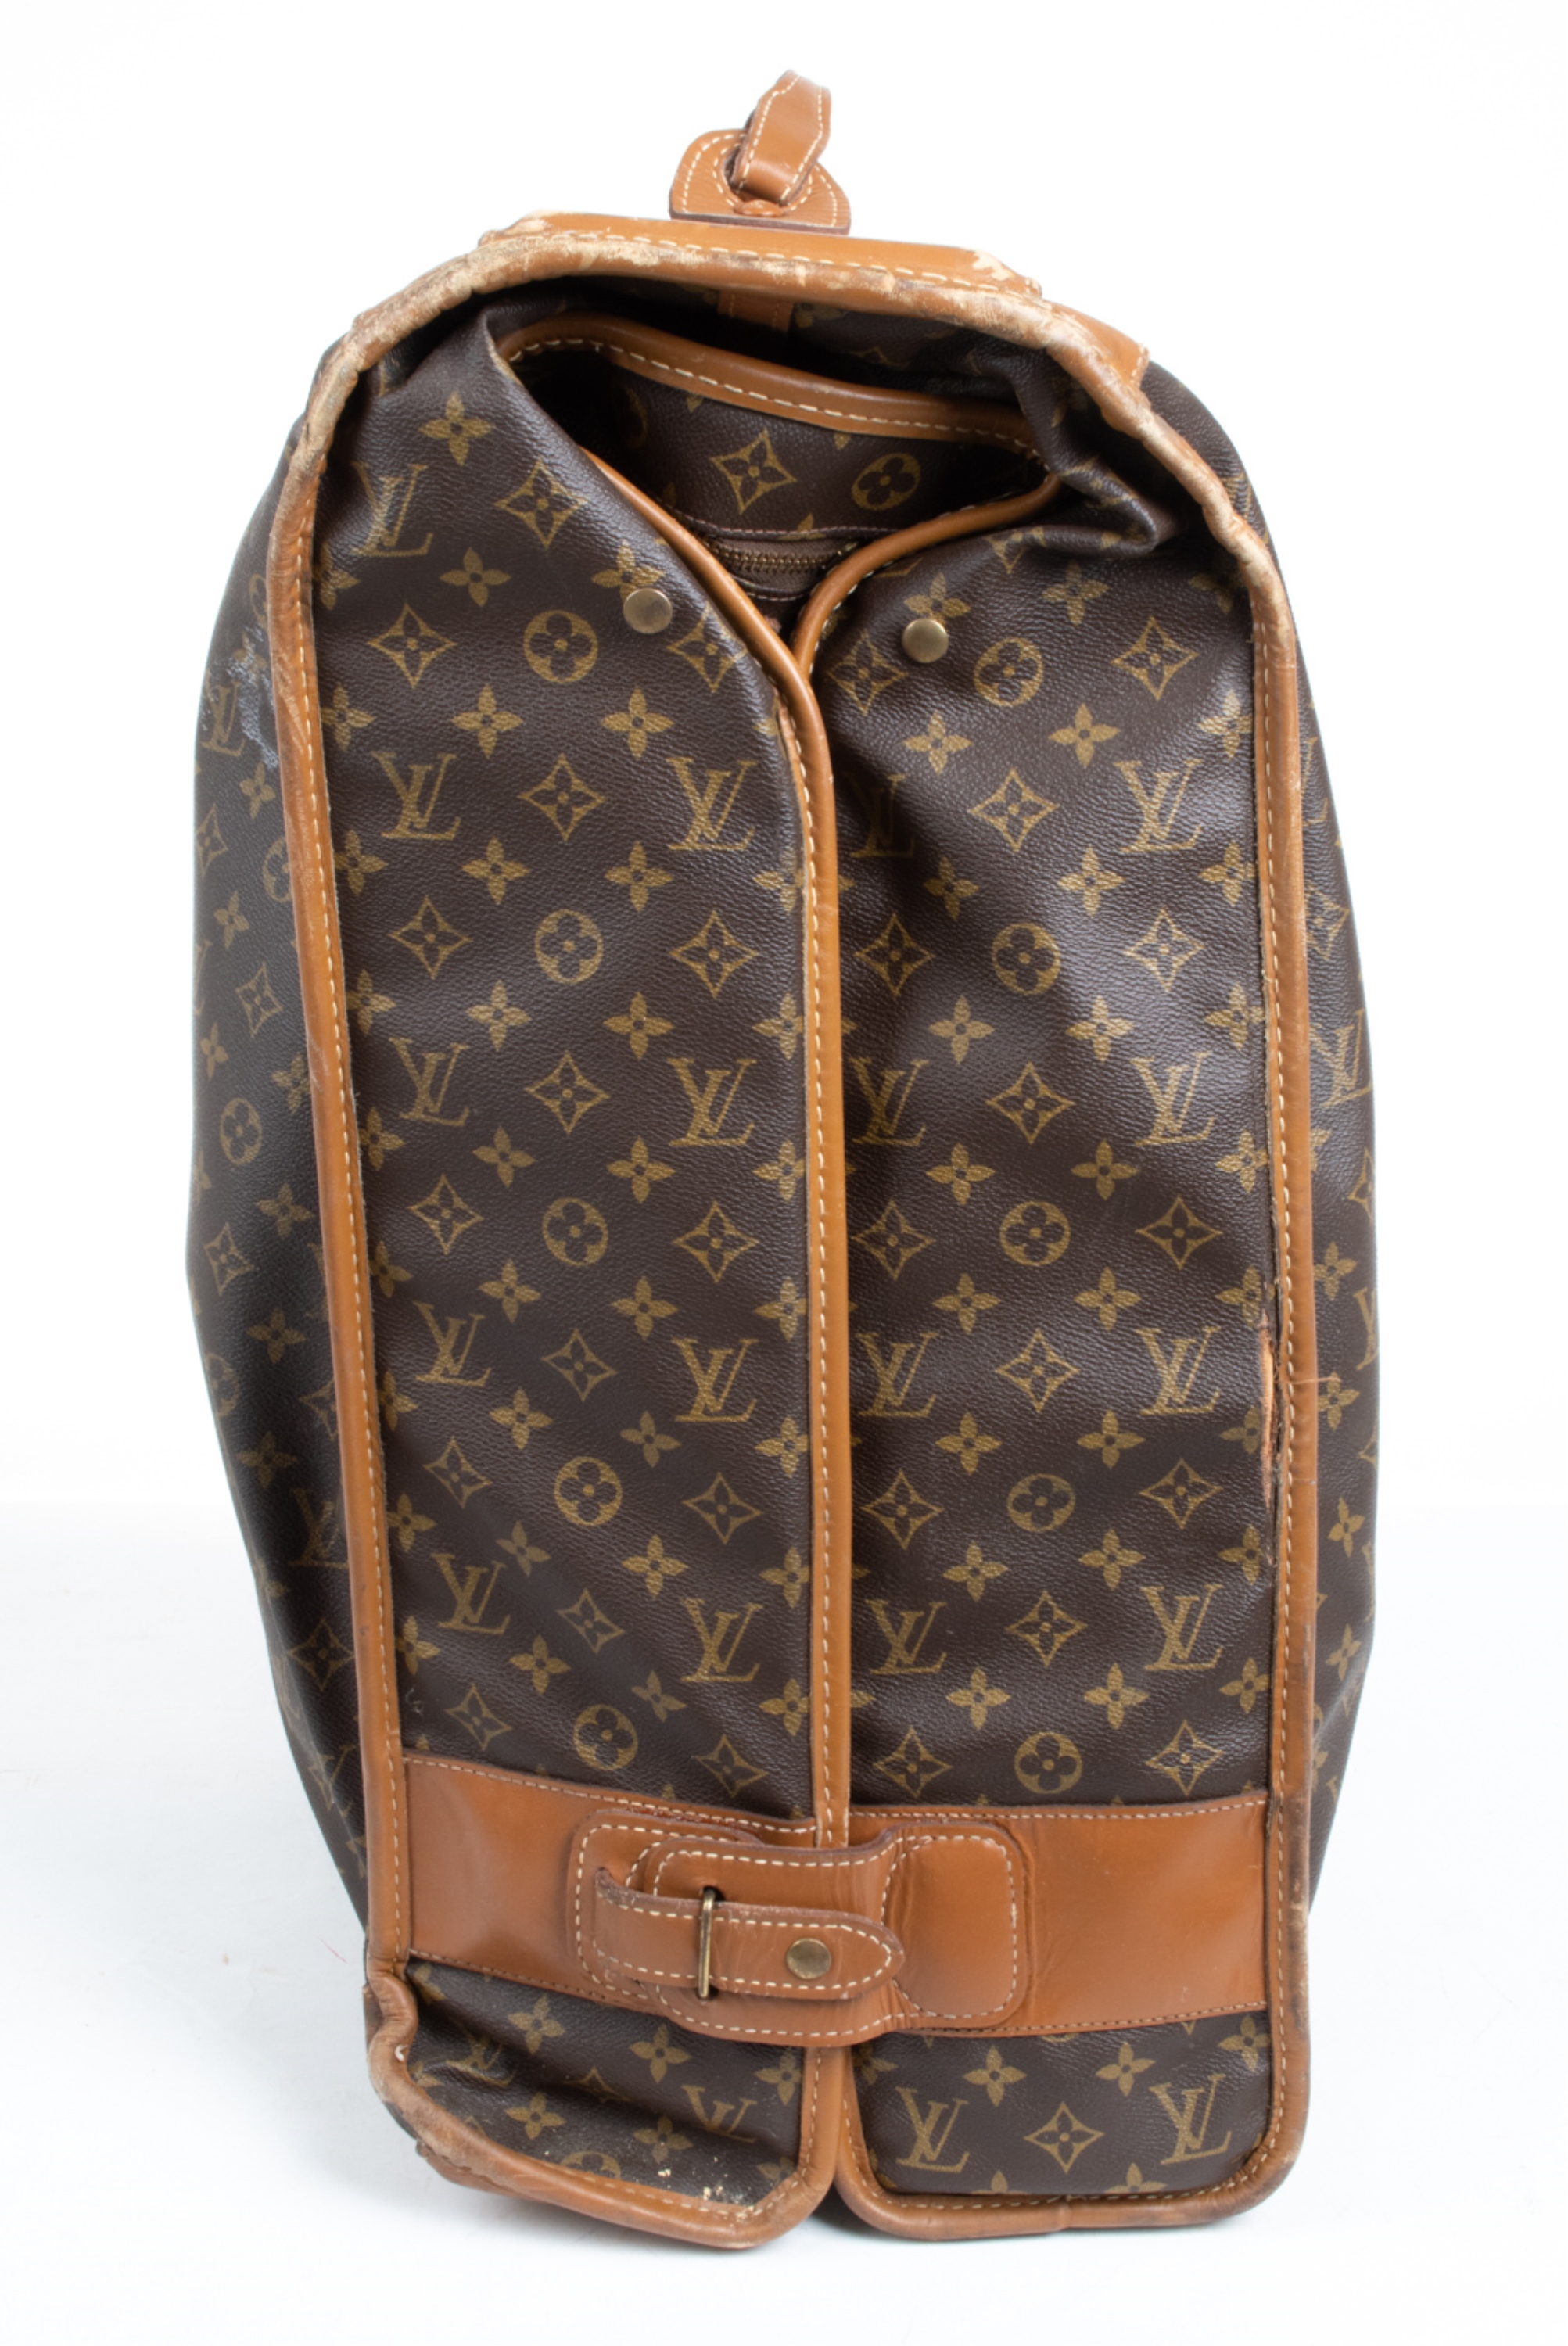 Lot - Vintage Louis Vuitton Large Folding Garment Monogram Bag